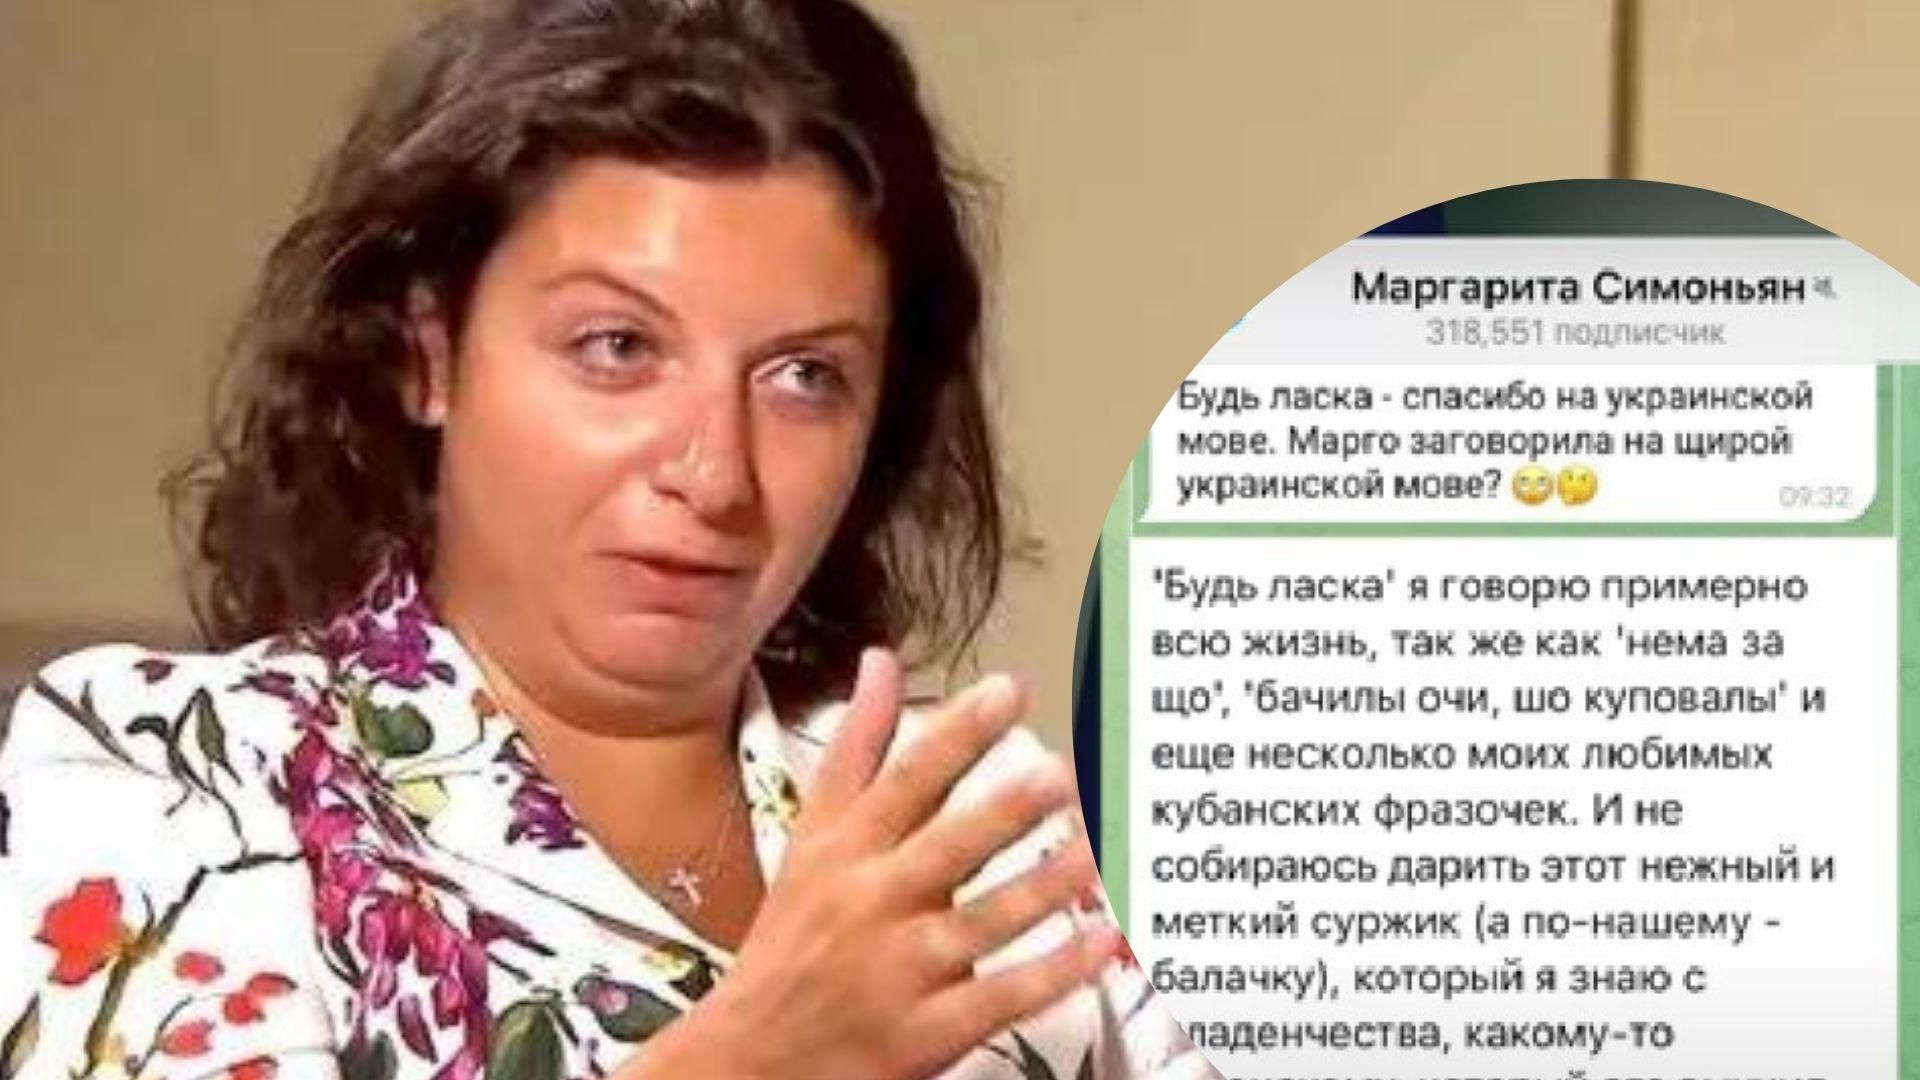 "Спасибо – это будь ласка": пропагандистка Симоньян в очередной раз оконфузилась